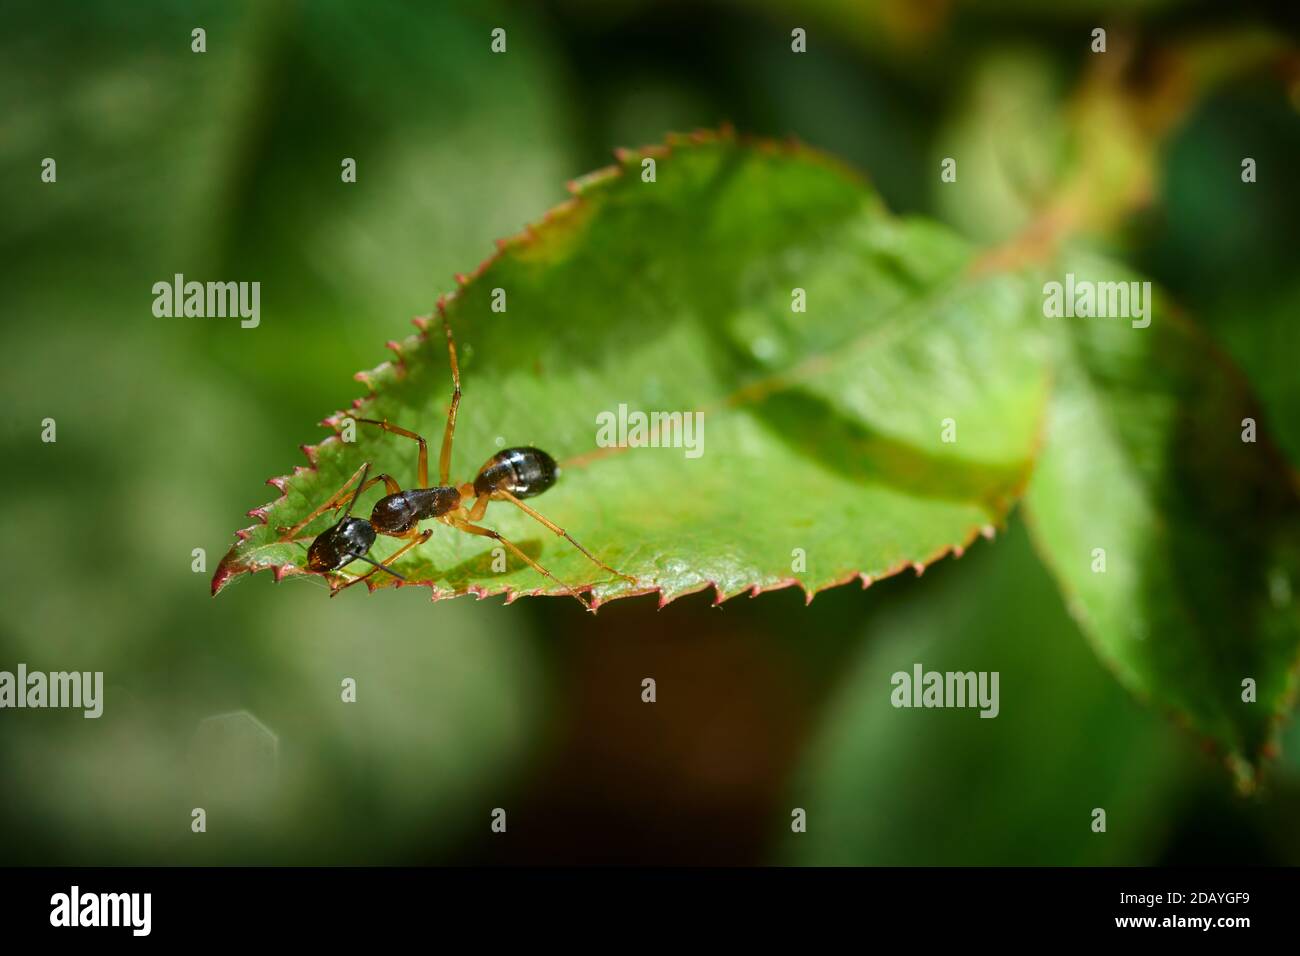 Nahaufnahme einer Zuckeranze auf einem Rosenblatt. Die Ameise schien Tau zu sammeln, der von Blattläusen auf einer Rosenblüte über der Ameisenposition ausgeschieden wurde. Stockfoto